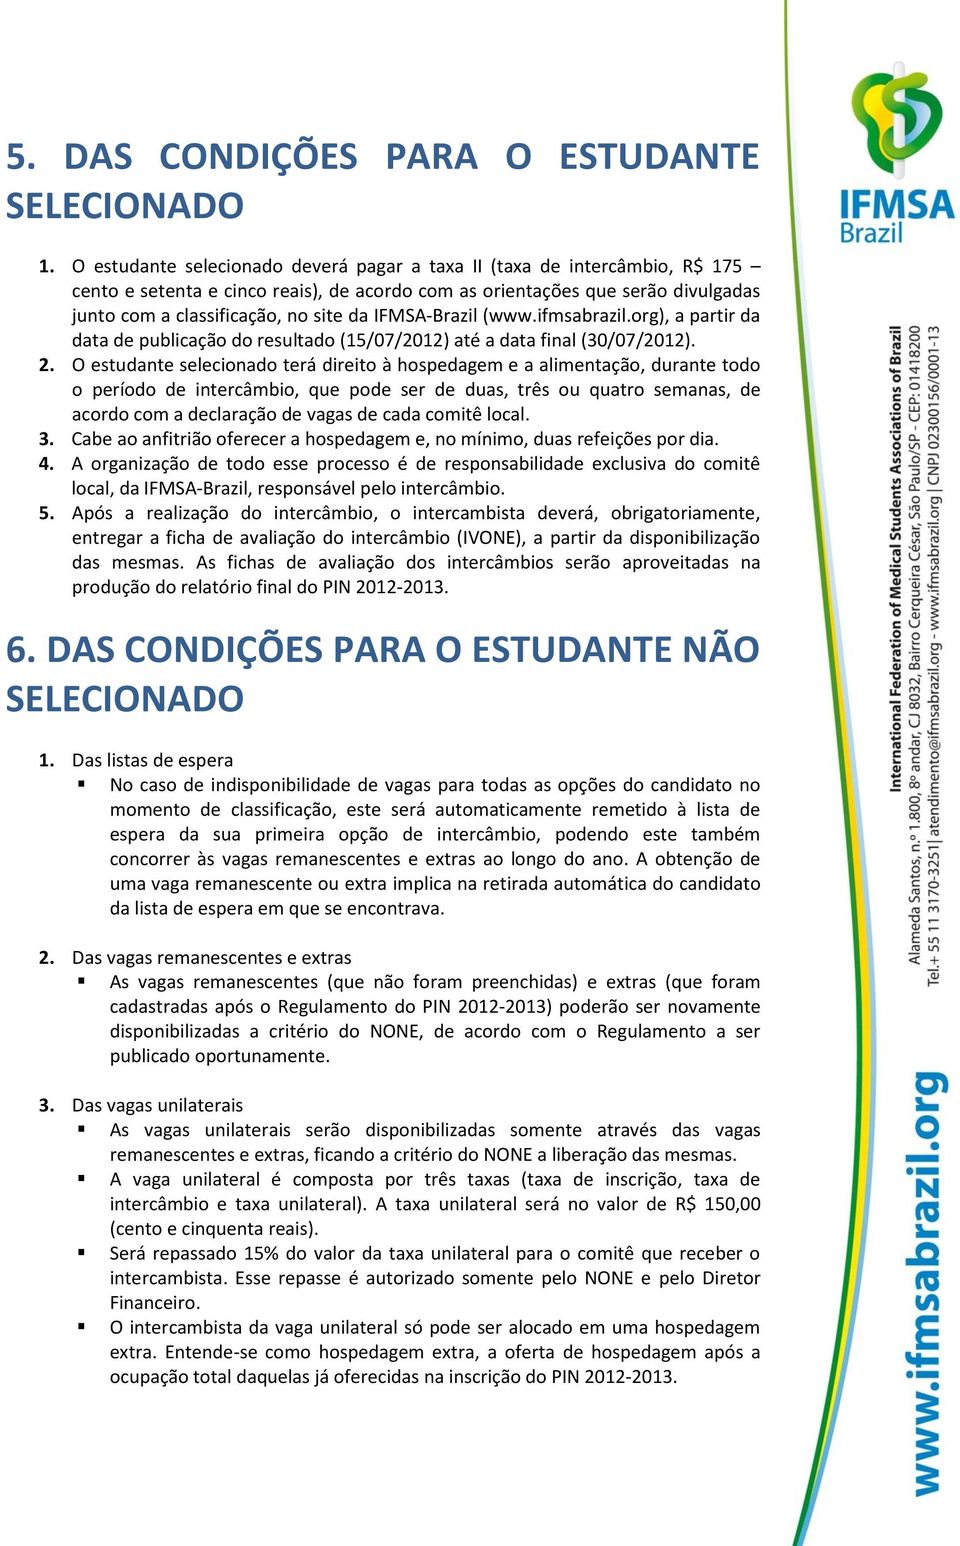 IFMSA-Brazil (www.ifmsabrazil.org), a partir da data de publicação do resultado (15/07/2012) até a data final (30/07/2012). 2.